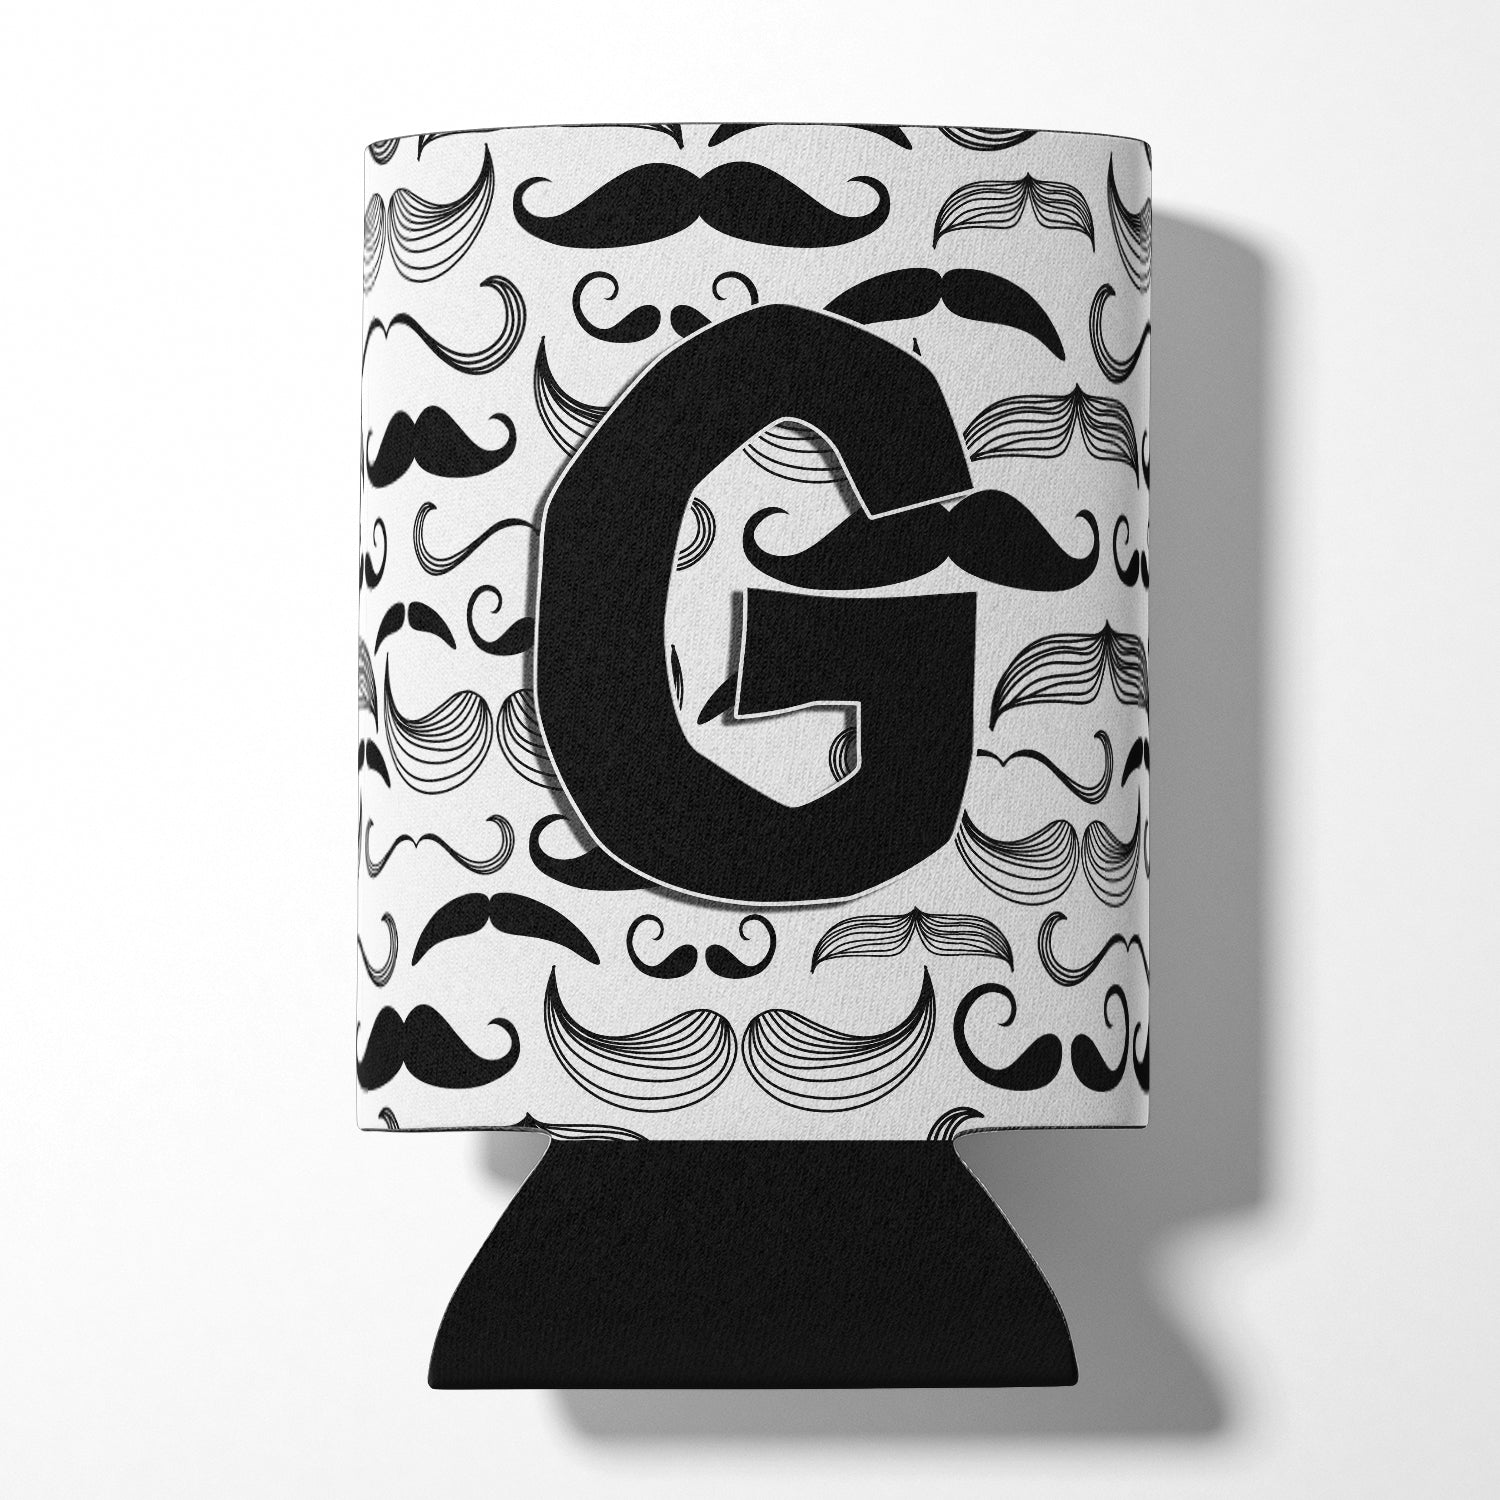 Letter G Moustache Initial Can or Bottle Hugger CJ2009-GCC